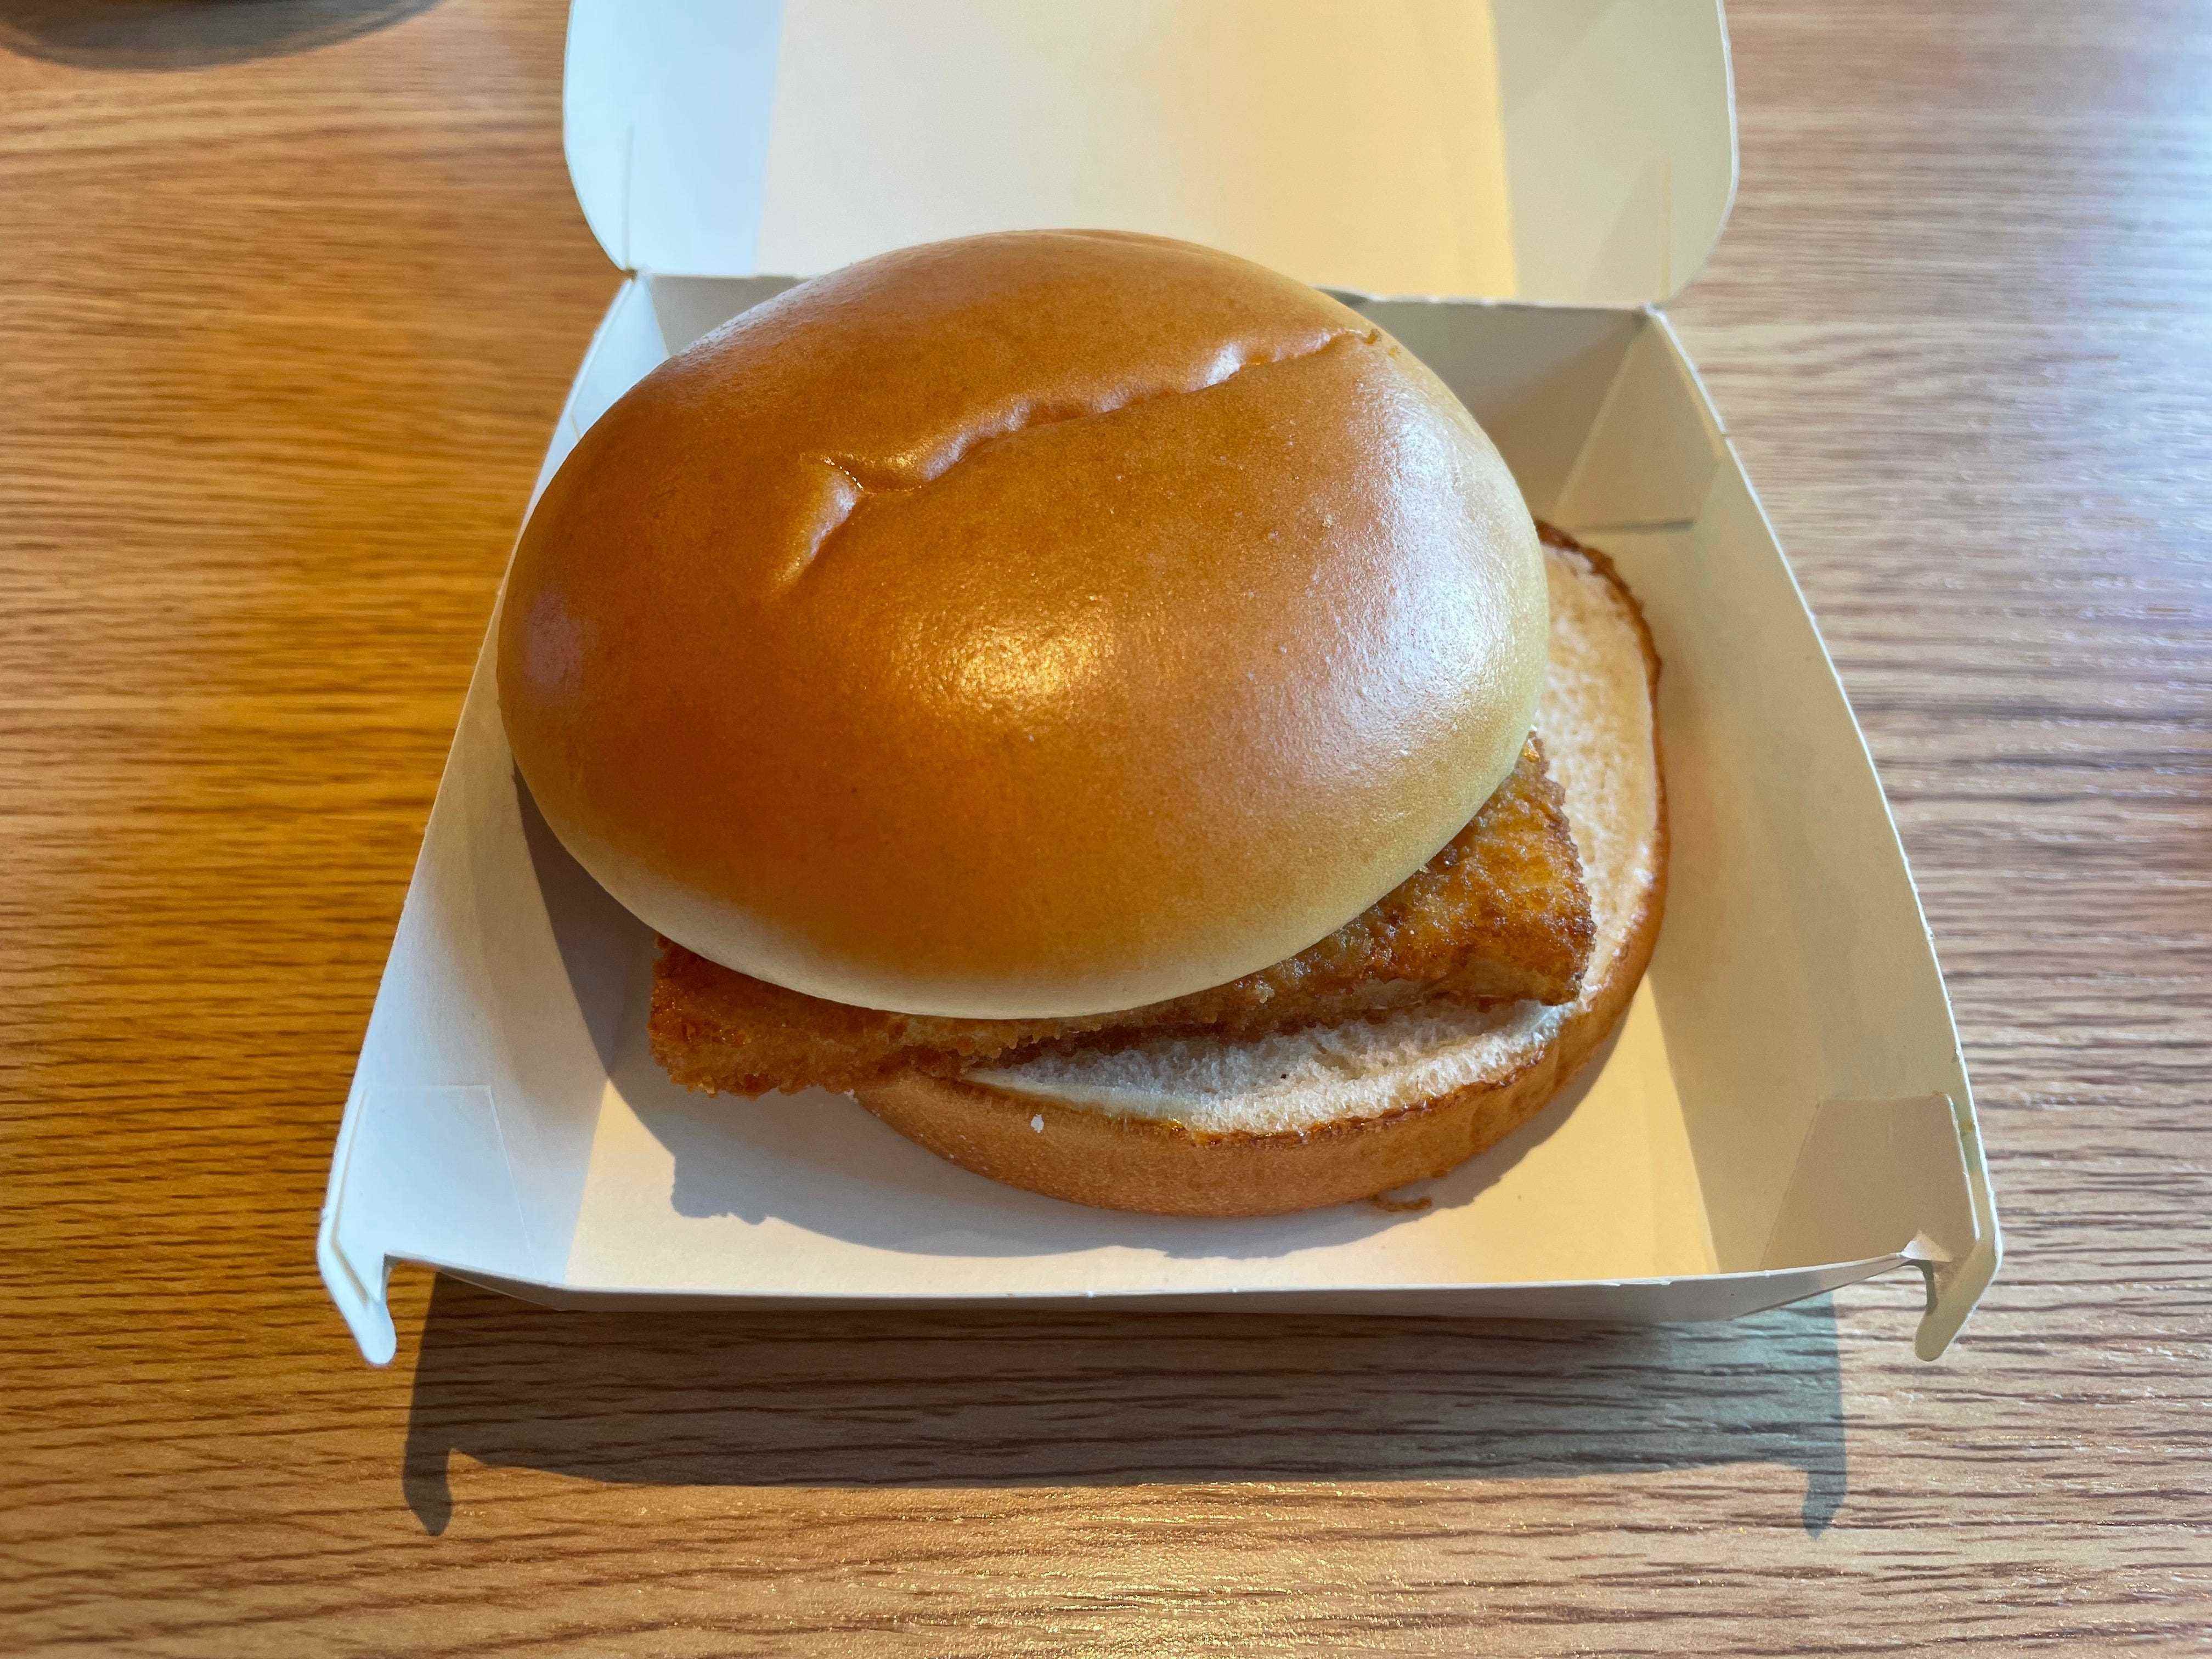 Der Fischburger bei Tasty & that’s it, dem umbenannten McDonald’s in Russland